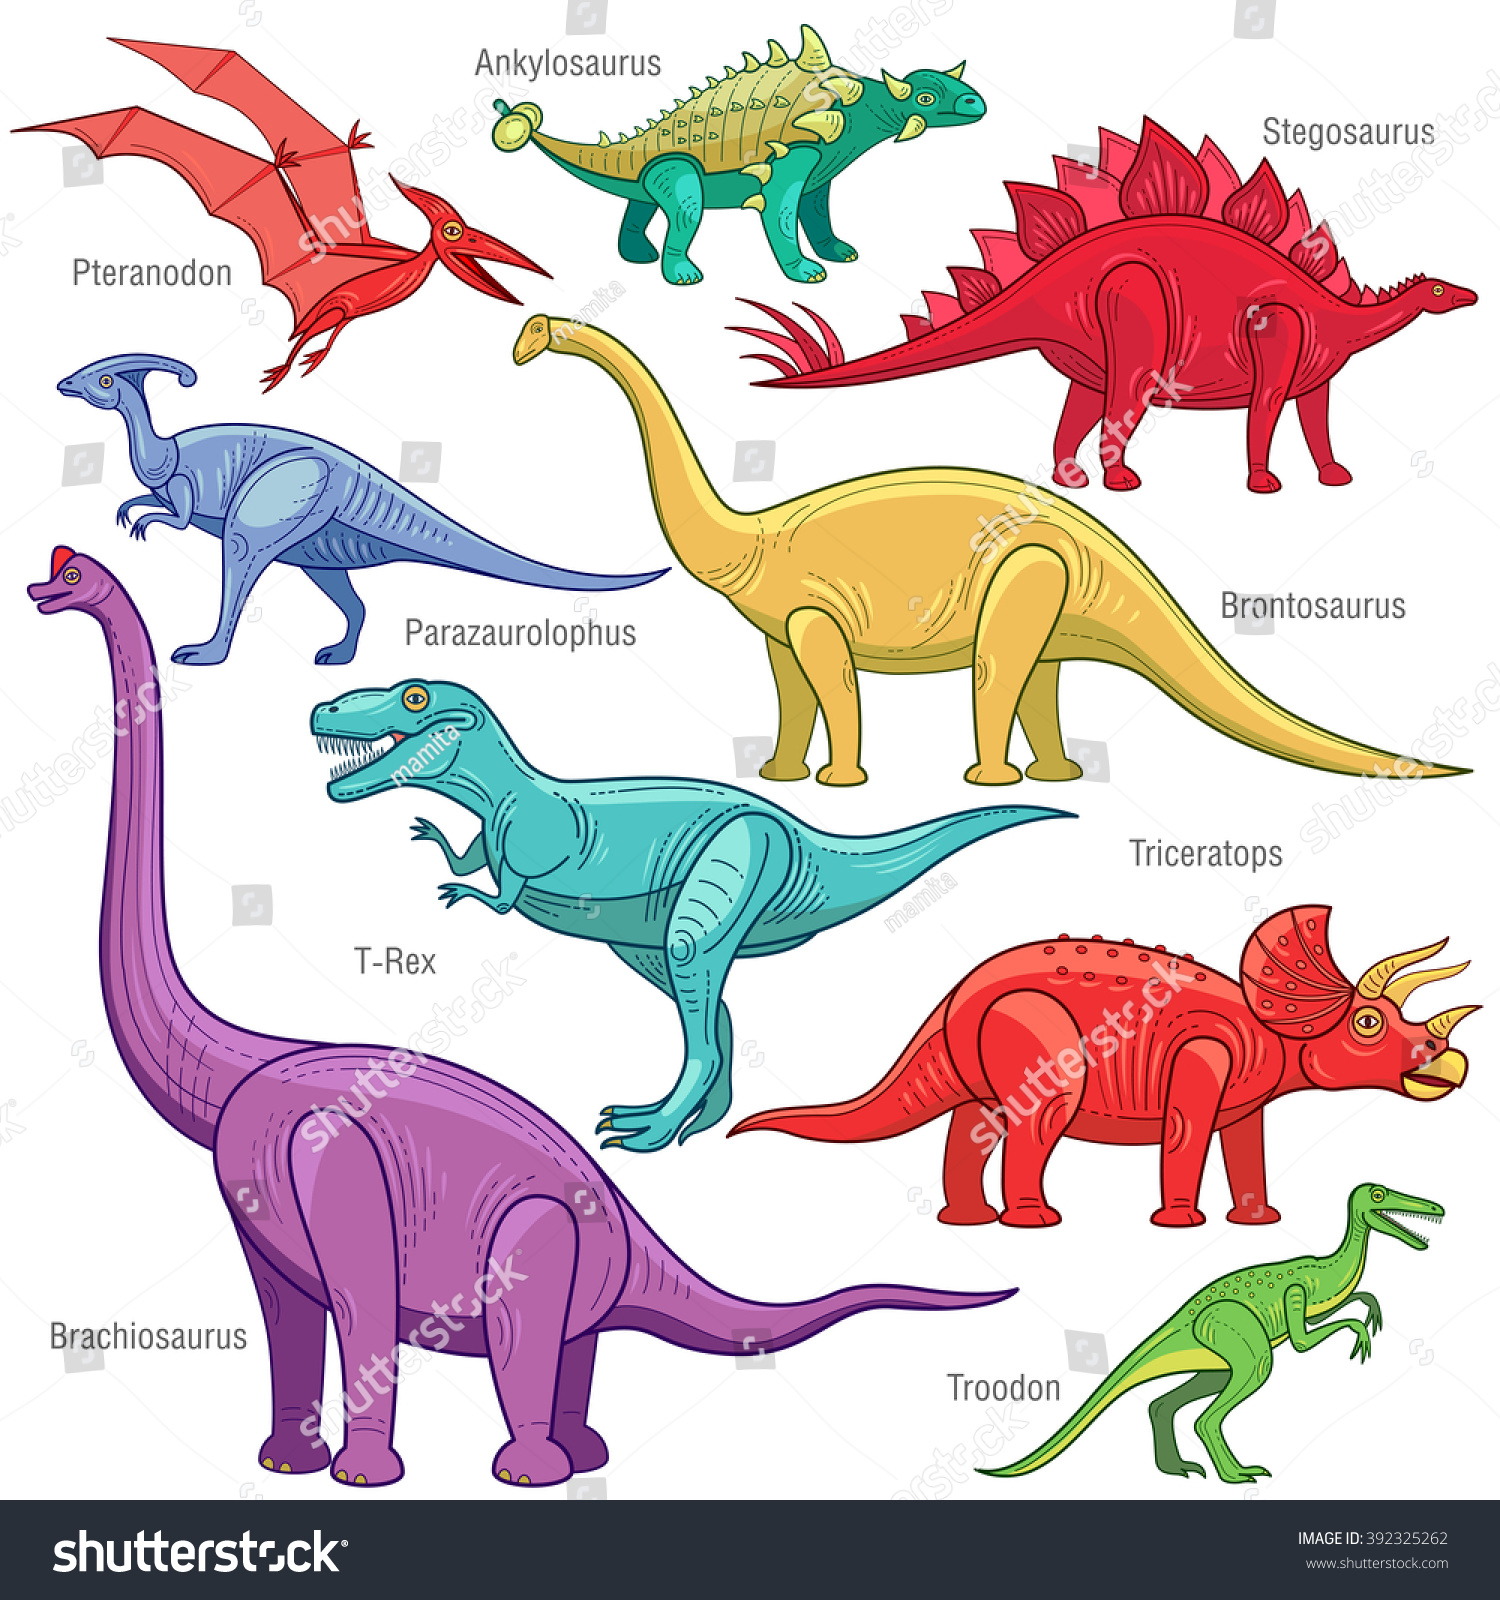 Ankylosaurus Brontosaurus Stegosaurus Triceratops Velociraptor Tyrannosauru...